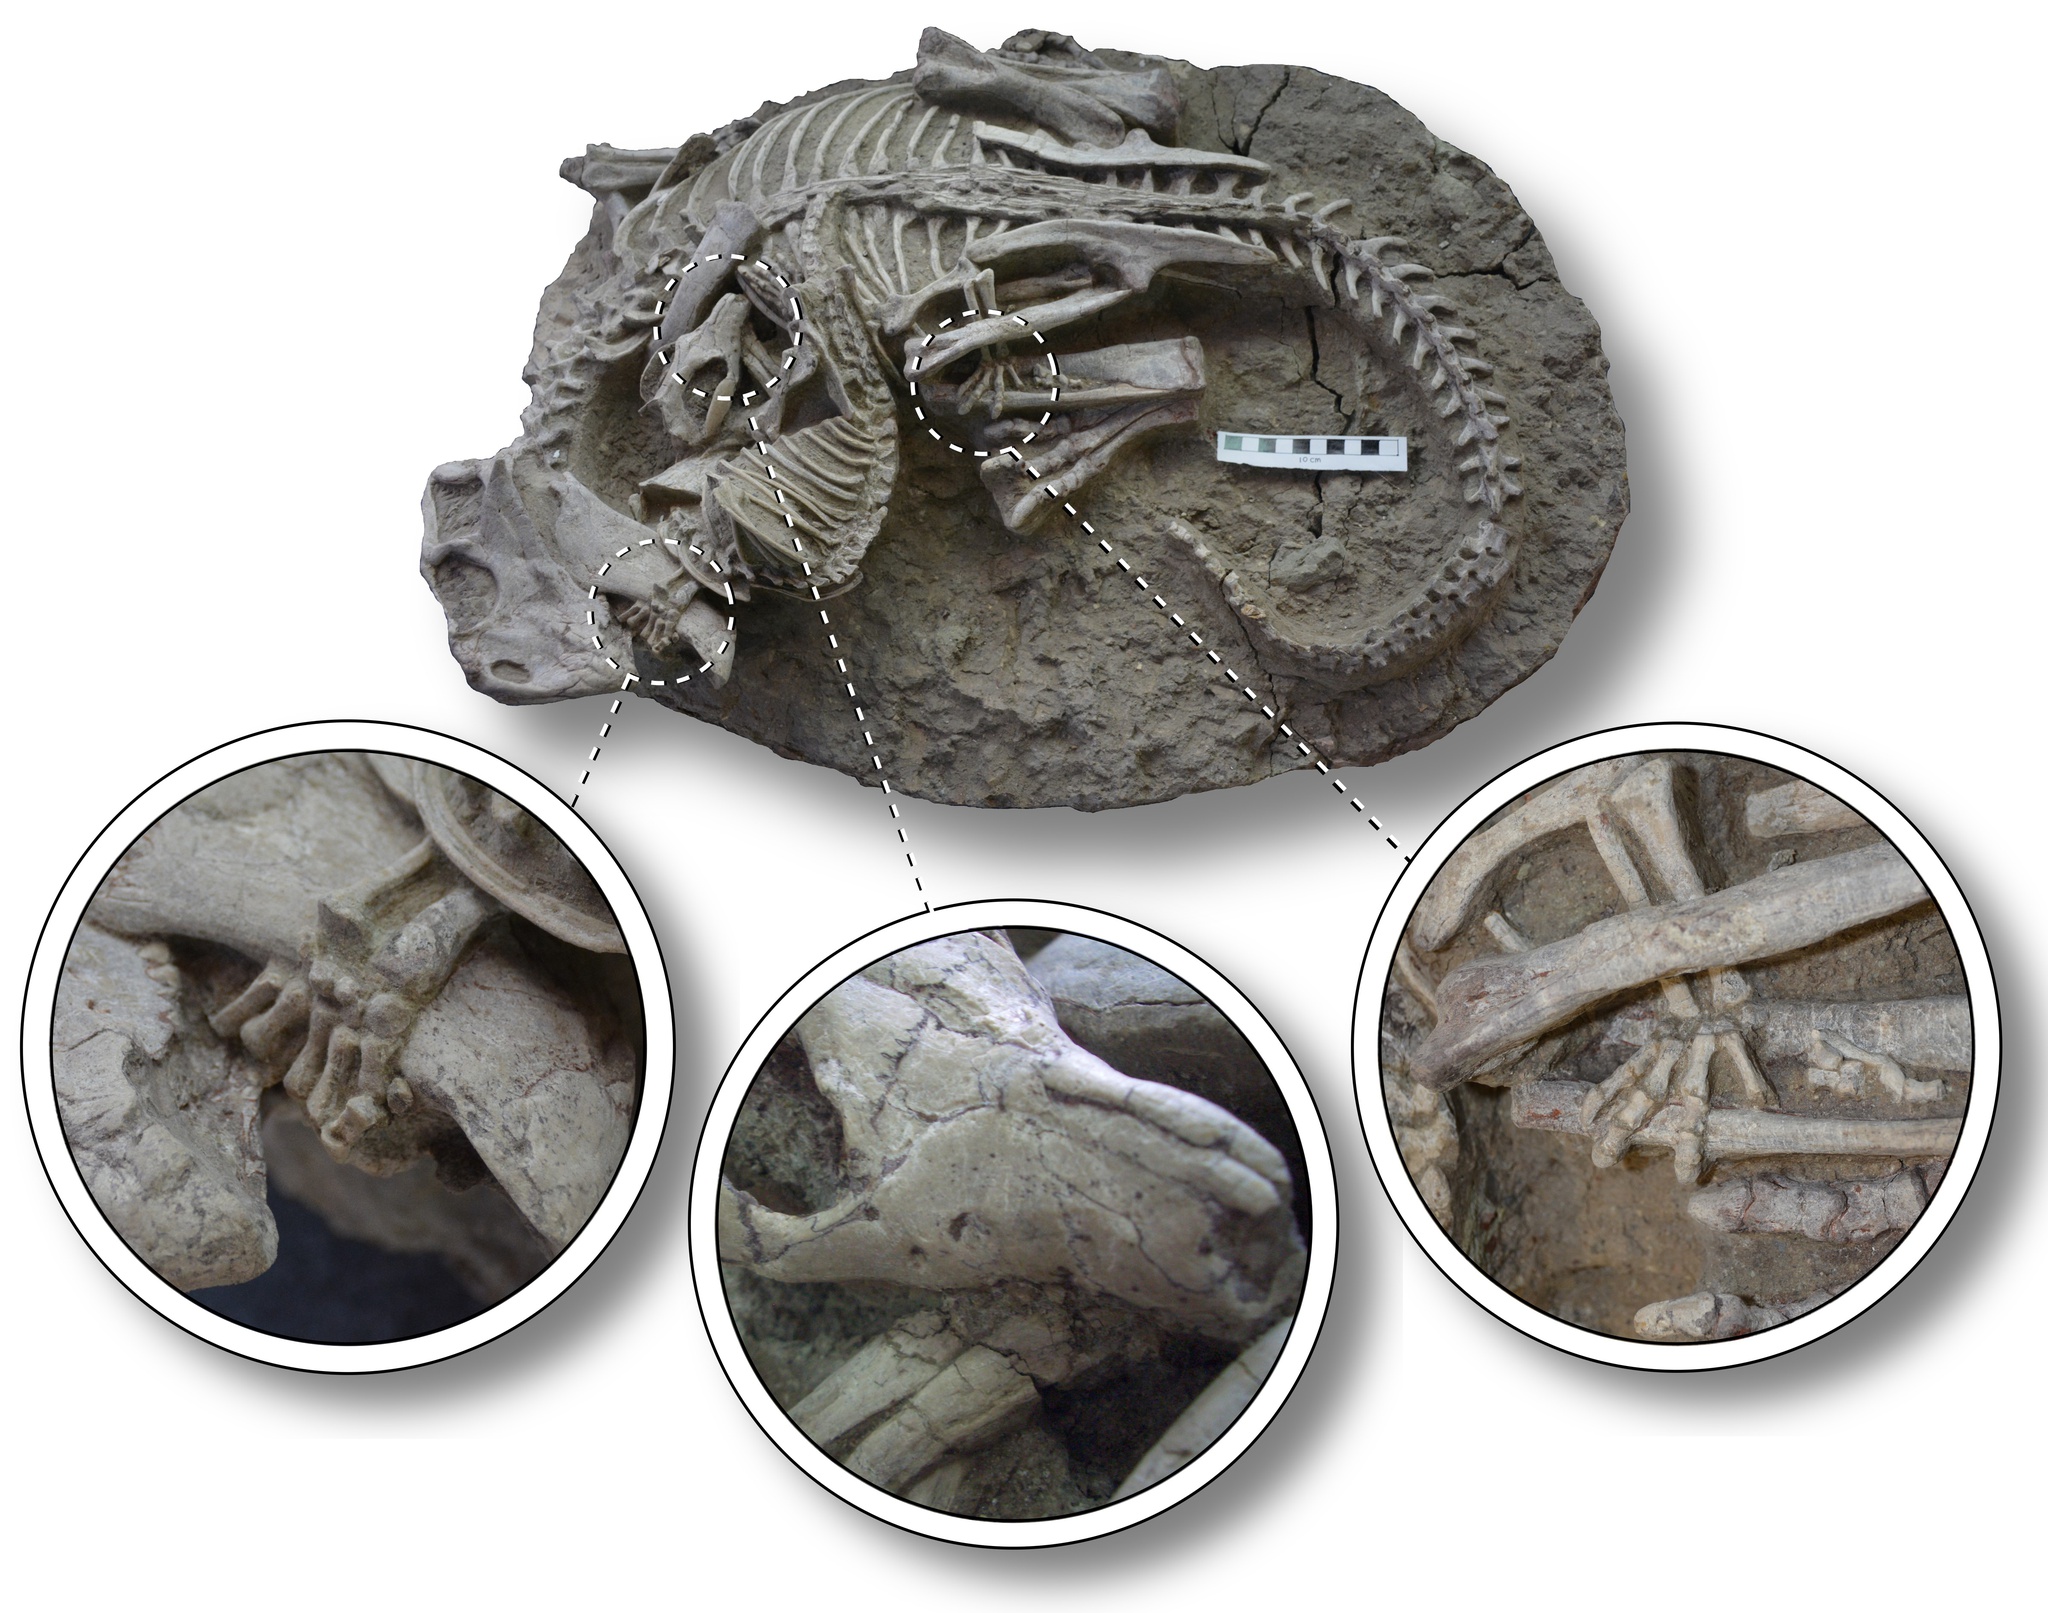 Descoberta de tecidos moles e elásticos em fóssil de um Tyrannosaurus rex –  Paleontologia Hoje